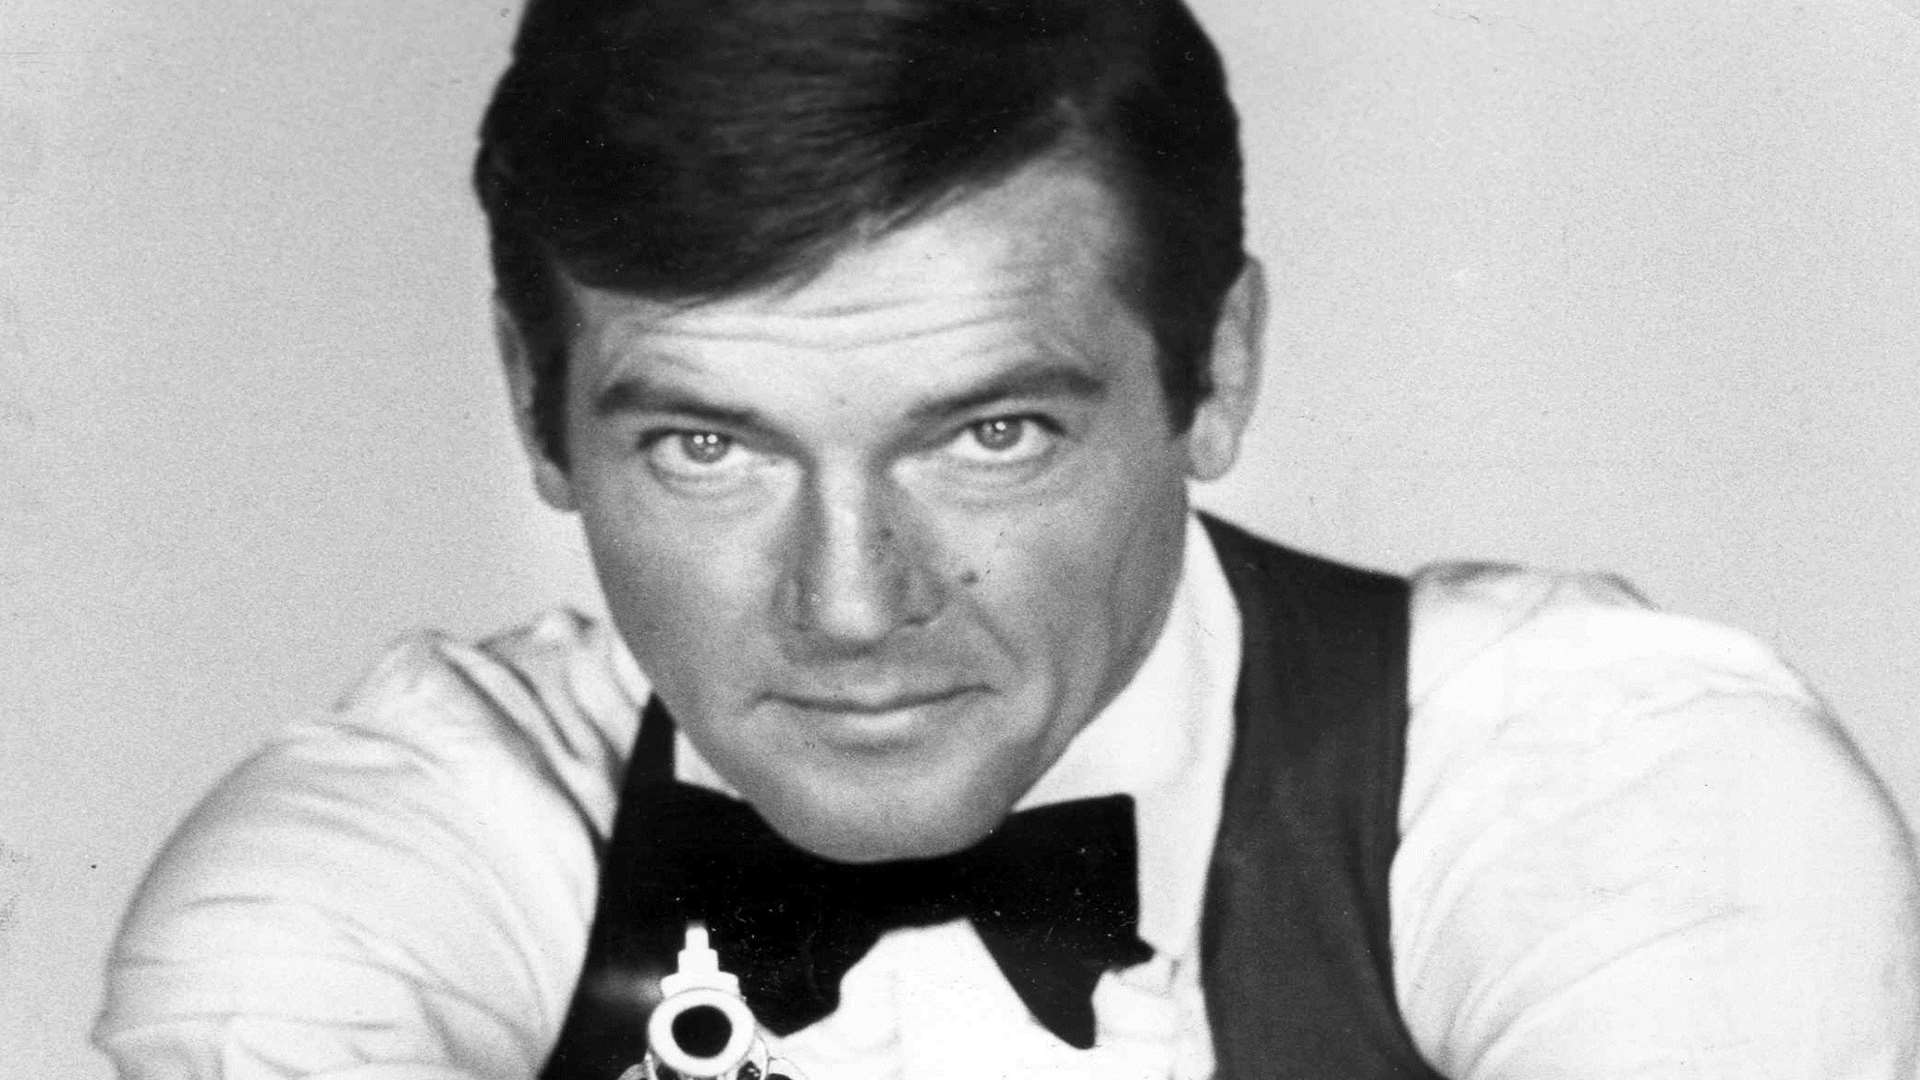 Sir Roger Moore as 007